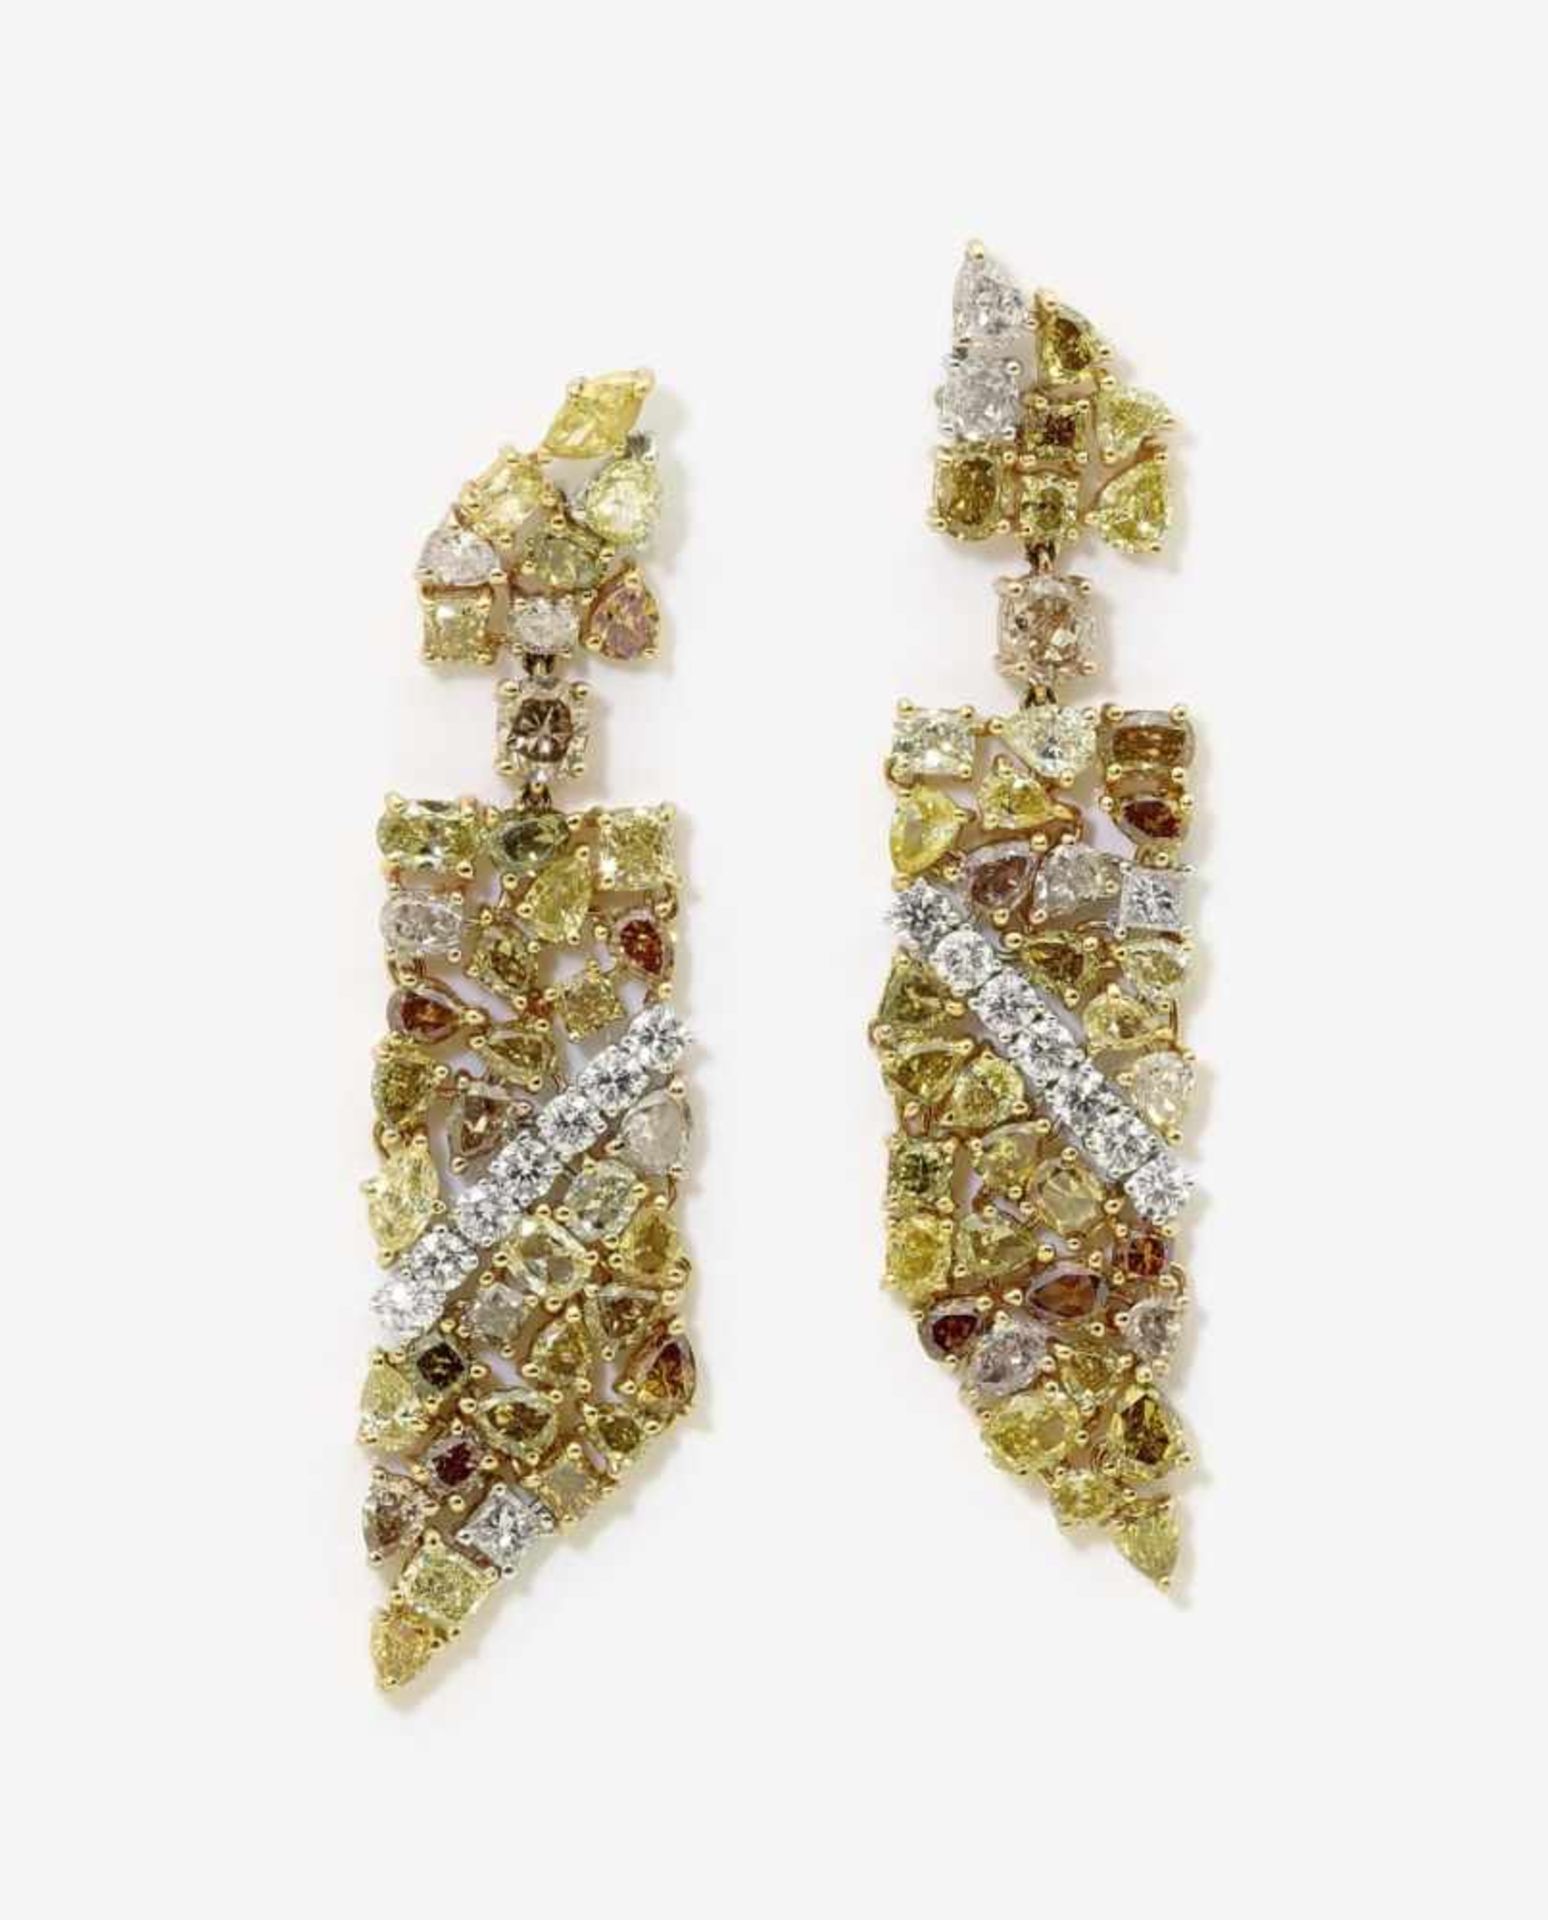 Ein Paar Ohrstiftgehänge mit Diamanten in vielfarbigen natürlichen Fancy Farben und Formen sowie